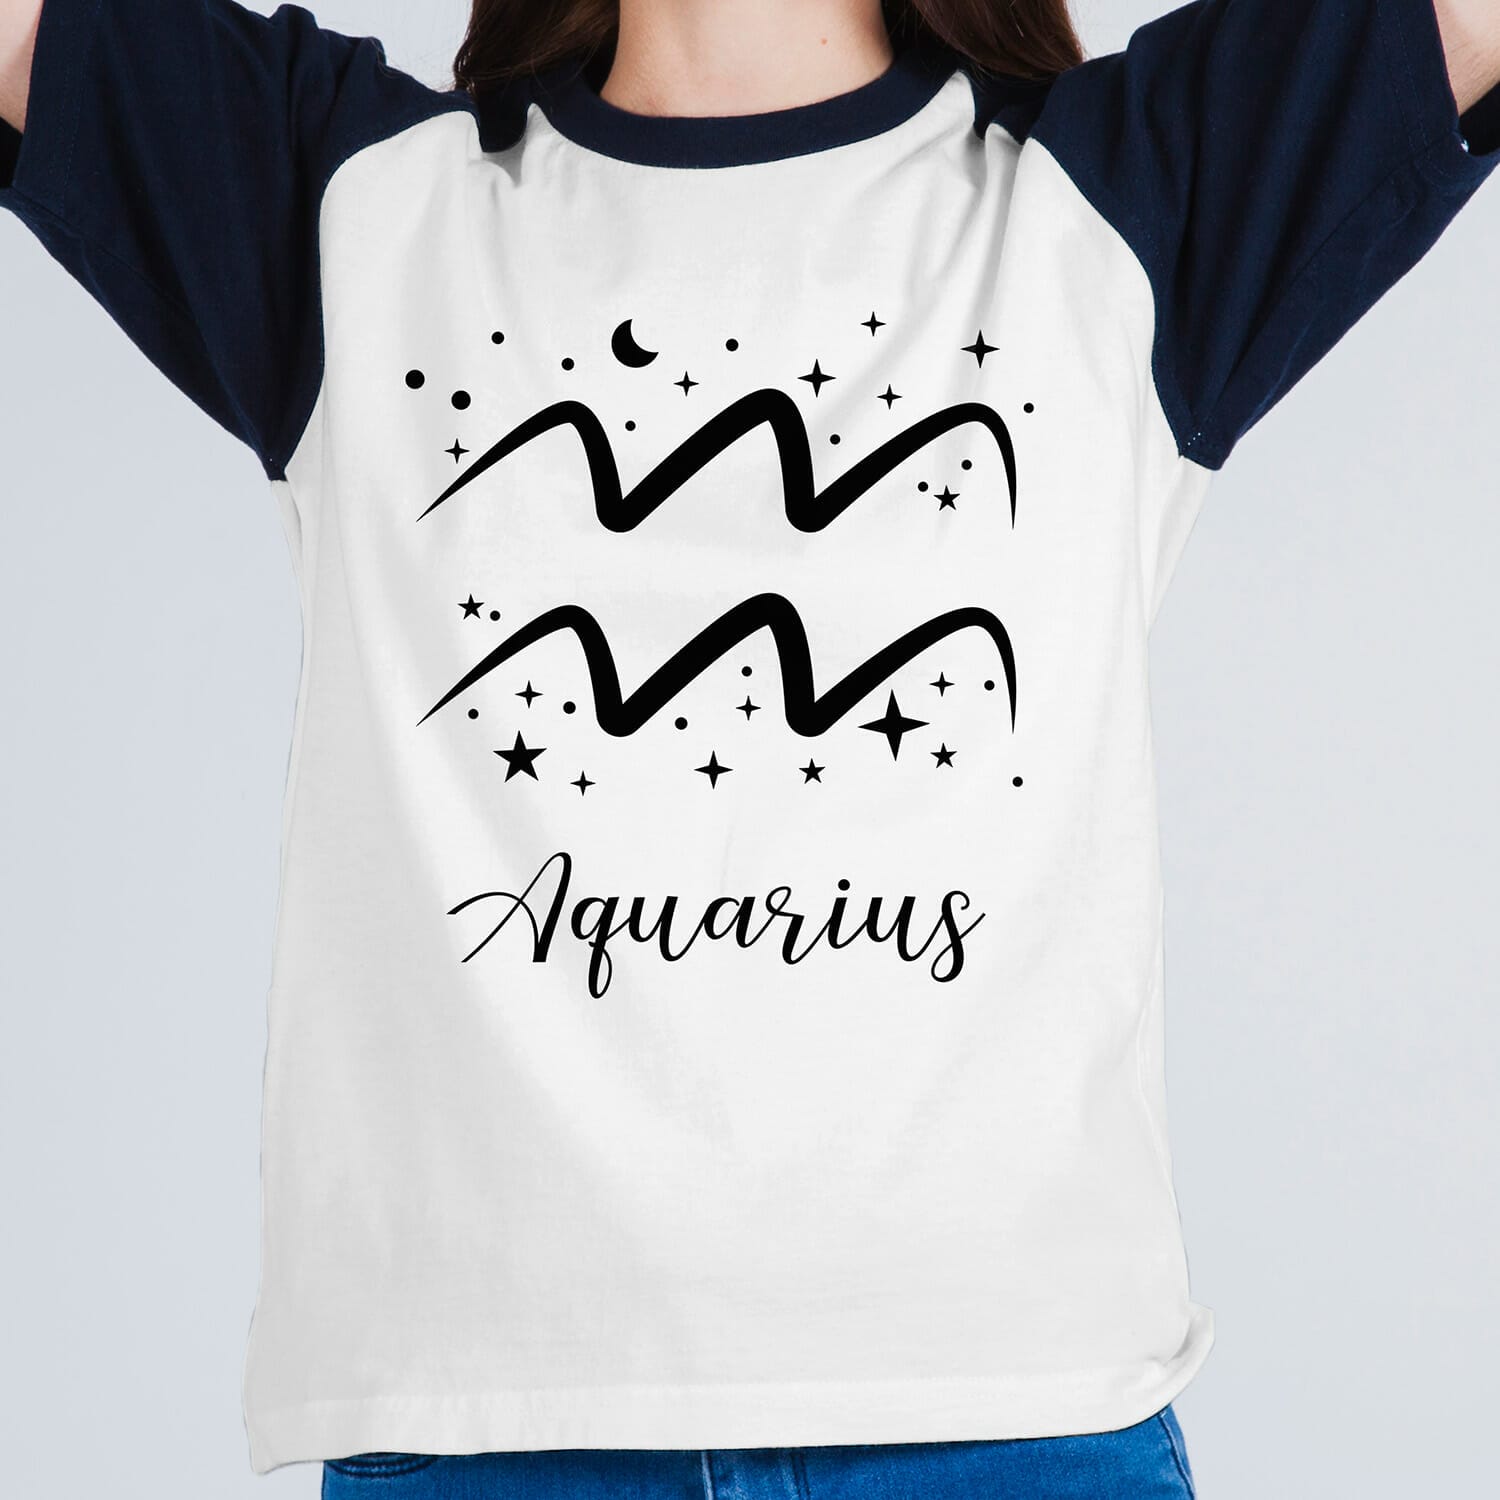 Aquarius horoscope tshirt design